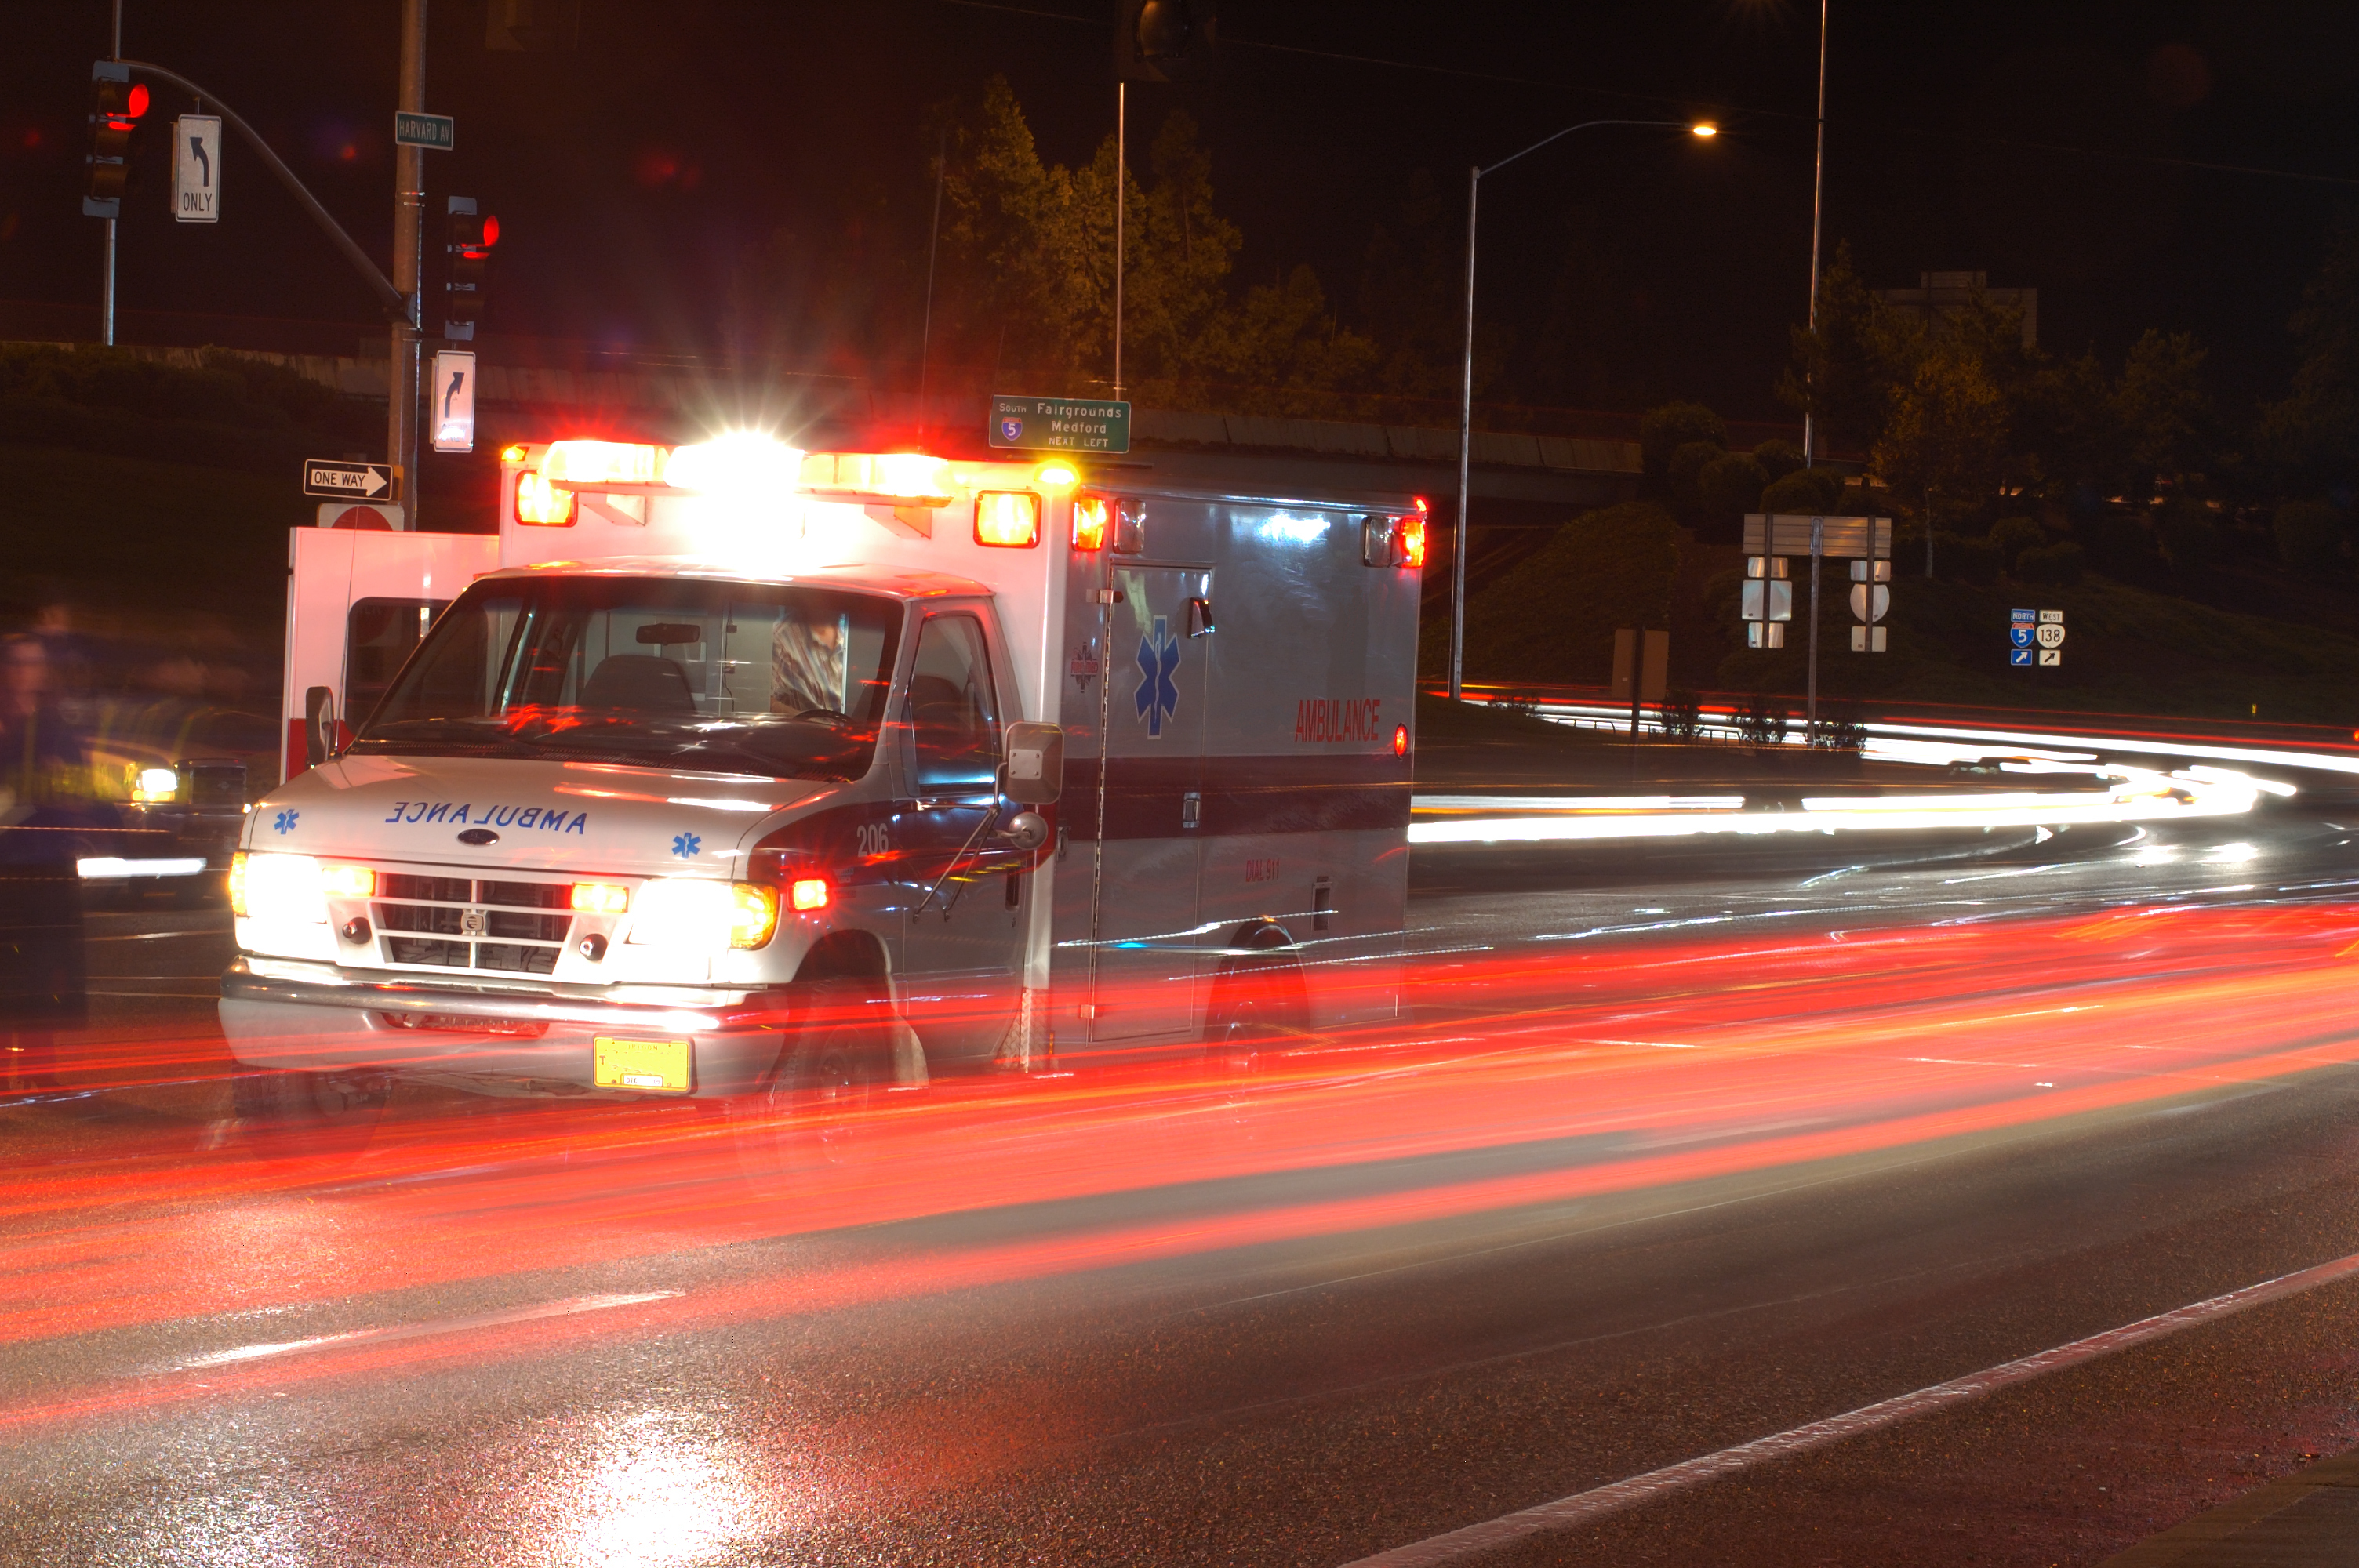 Ambulancia parada en el tráfico nocturno | Fuente: Shutterstock